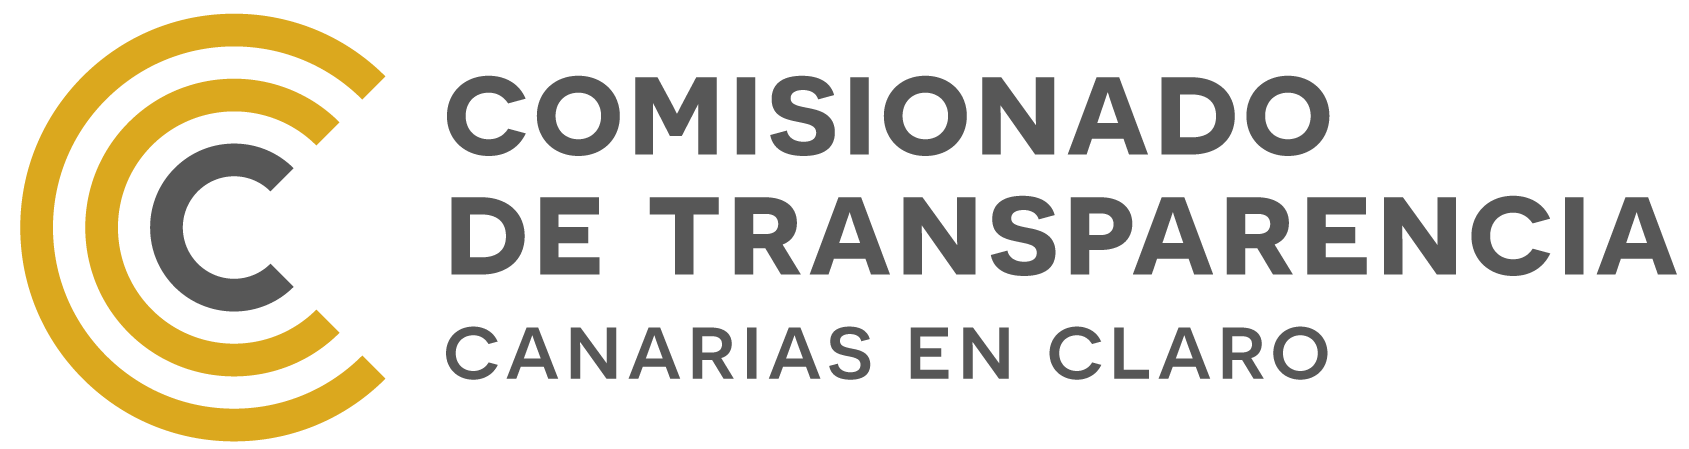 Comisionado de Transparencia del Gobierno de Canarias